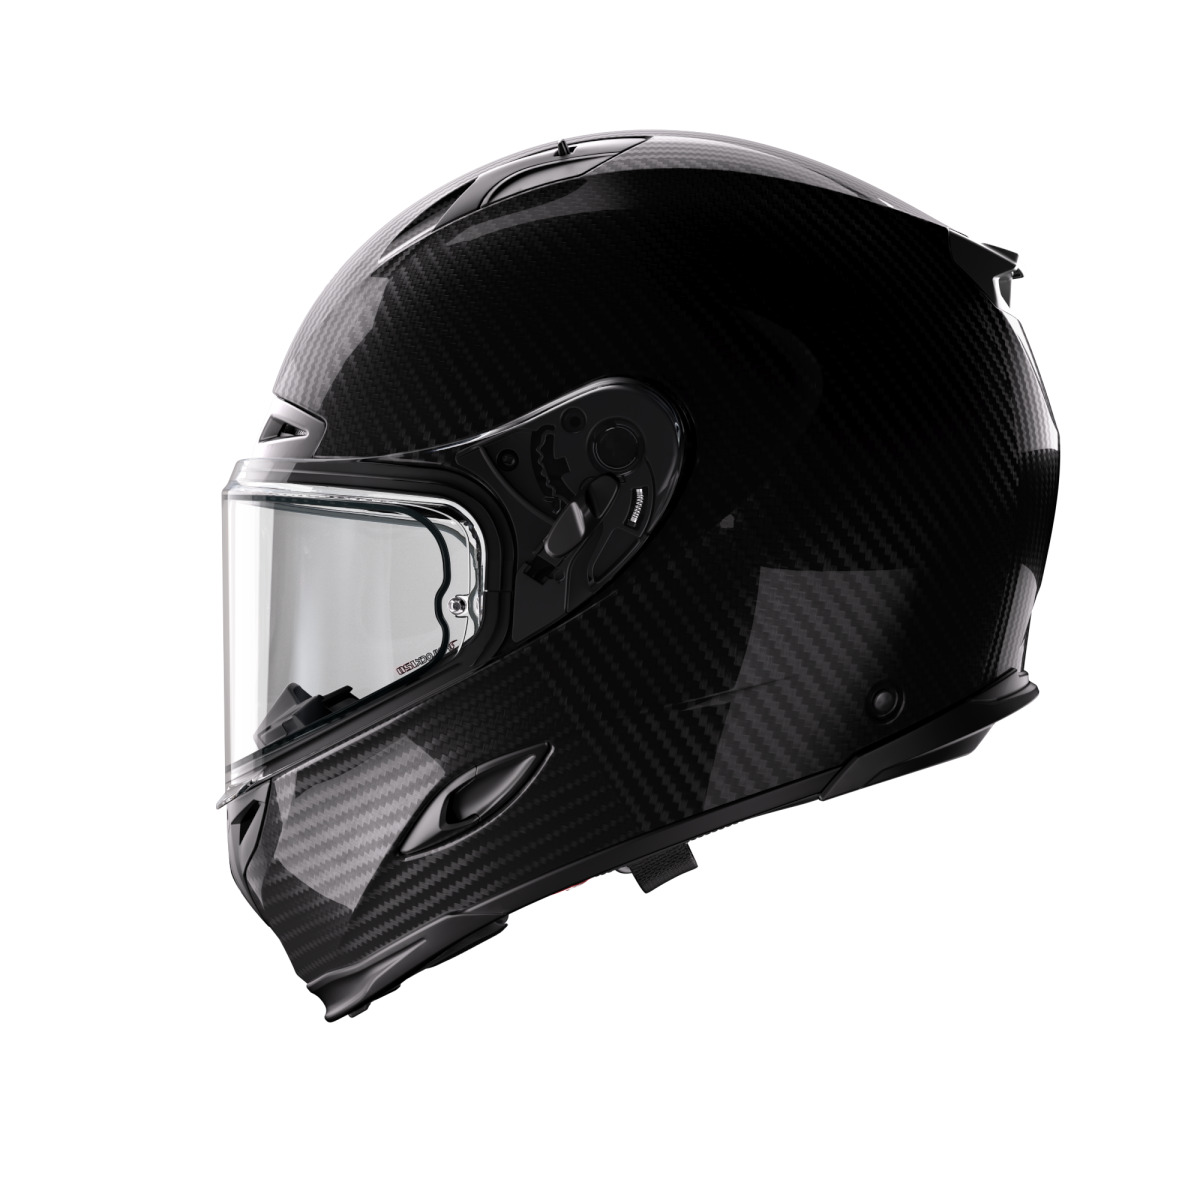 Forcite MK1S Carbon Fiber Helmet - Gloss Black - New - L